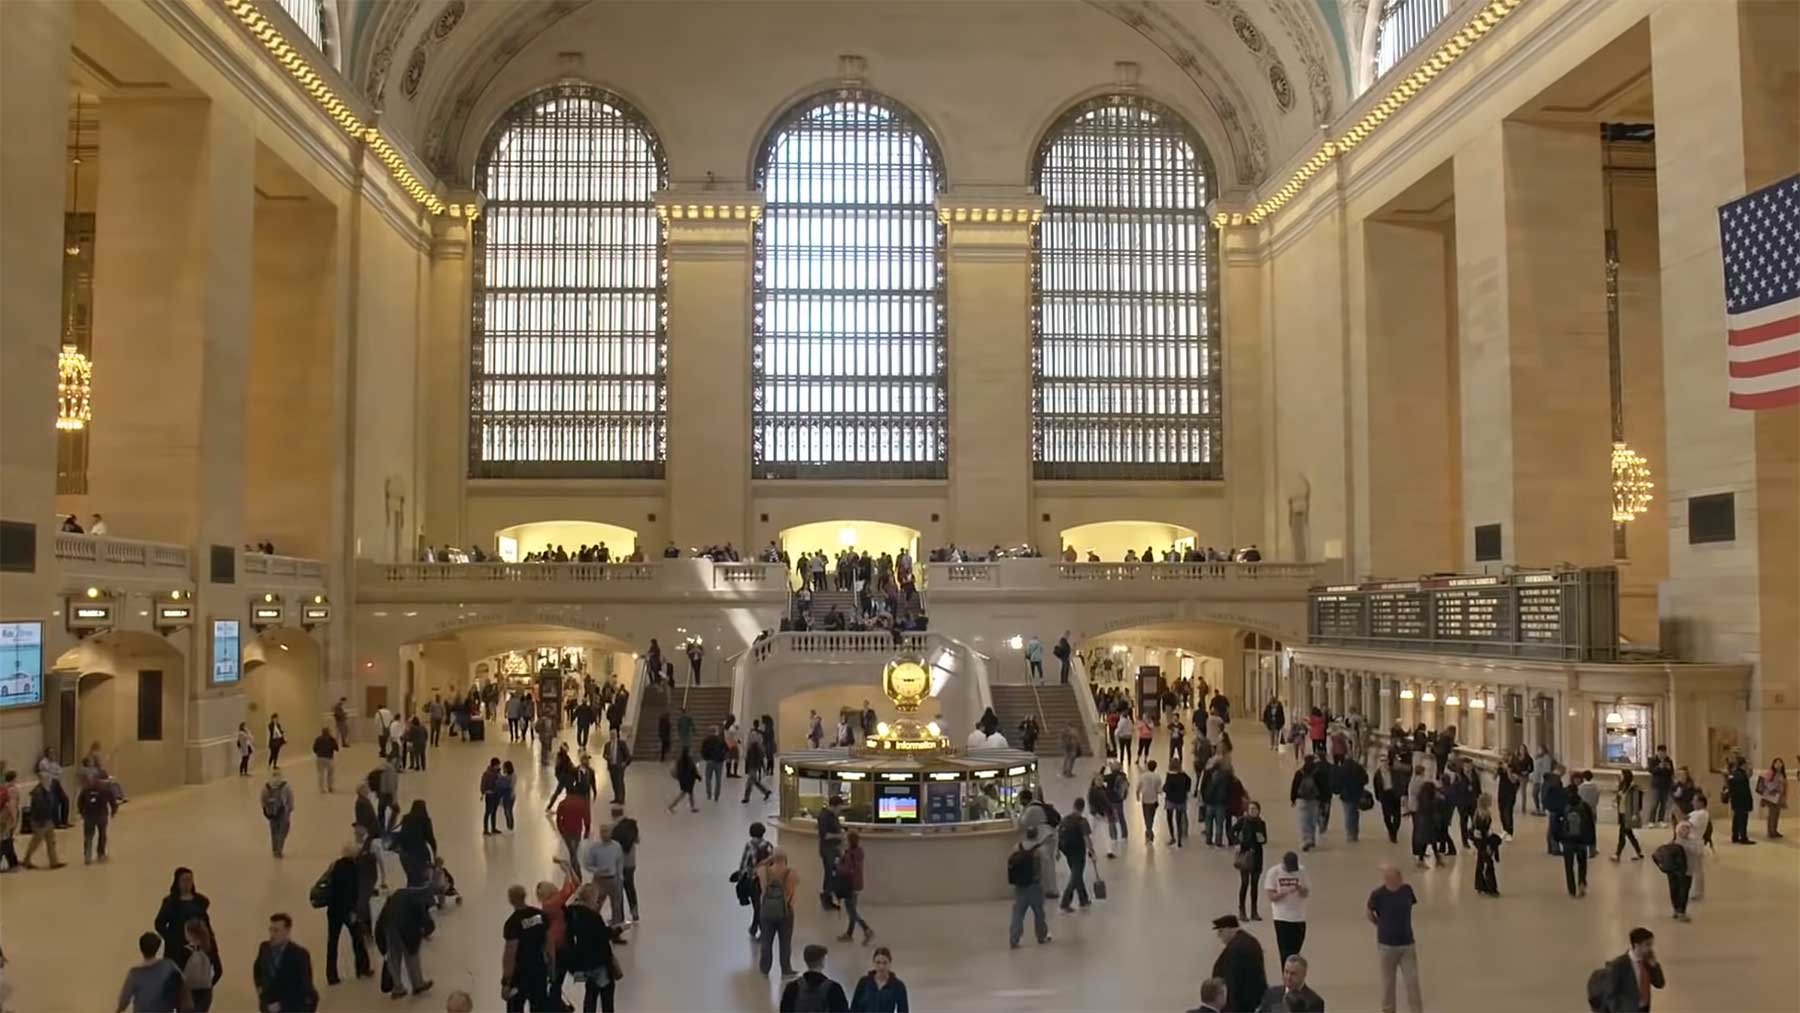 Grand Central Station: Erklärung der architektonischen Elemente